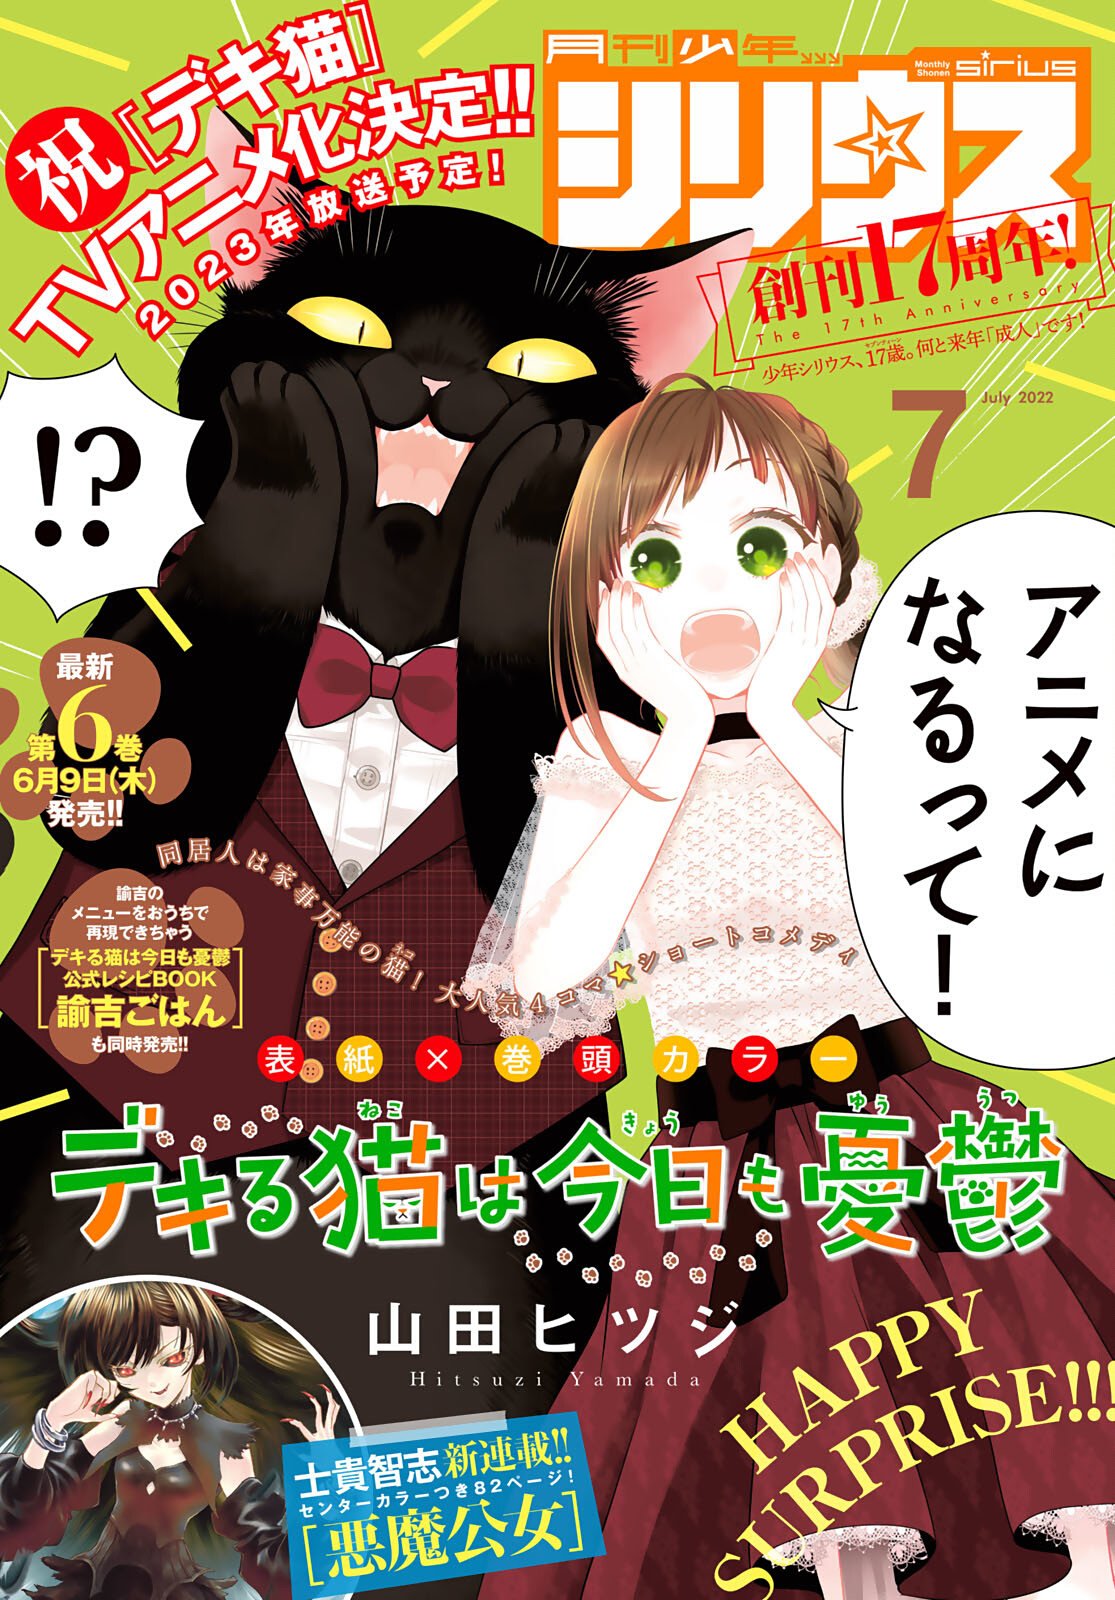 ✨Ela possui um gato gigante que faz de tudo - Anime Dekiru Neko Ep.1